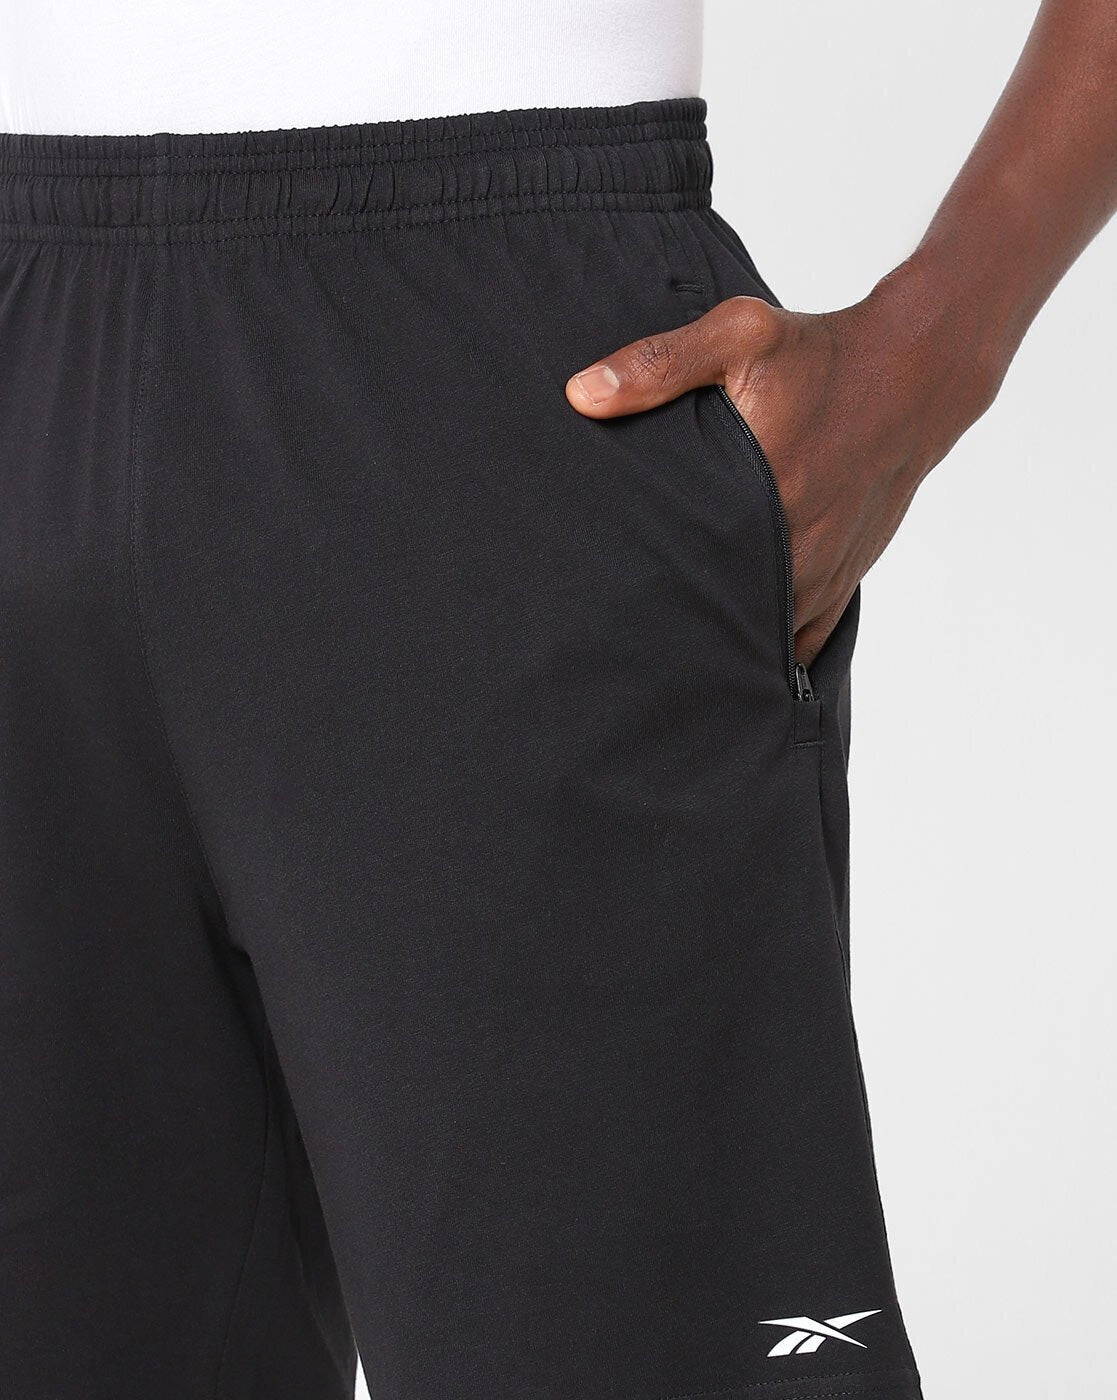 Shorts with Slip Pockets-Ha9815